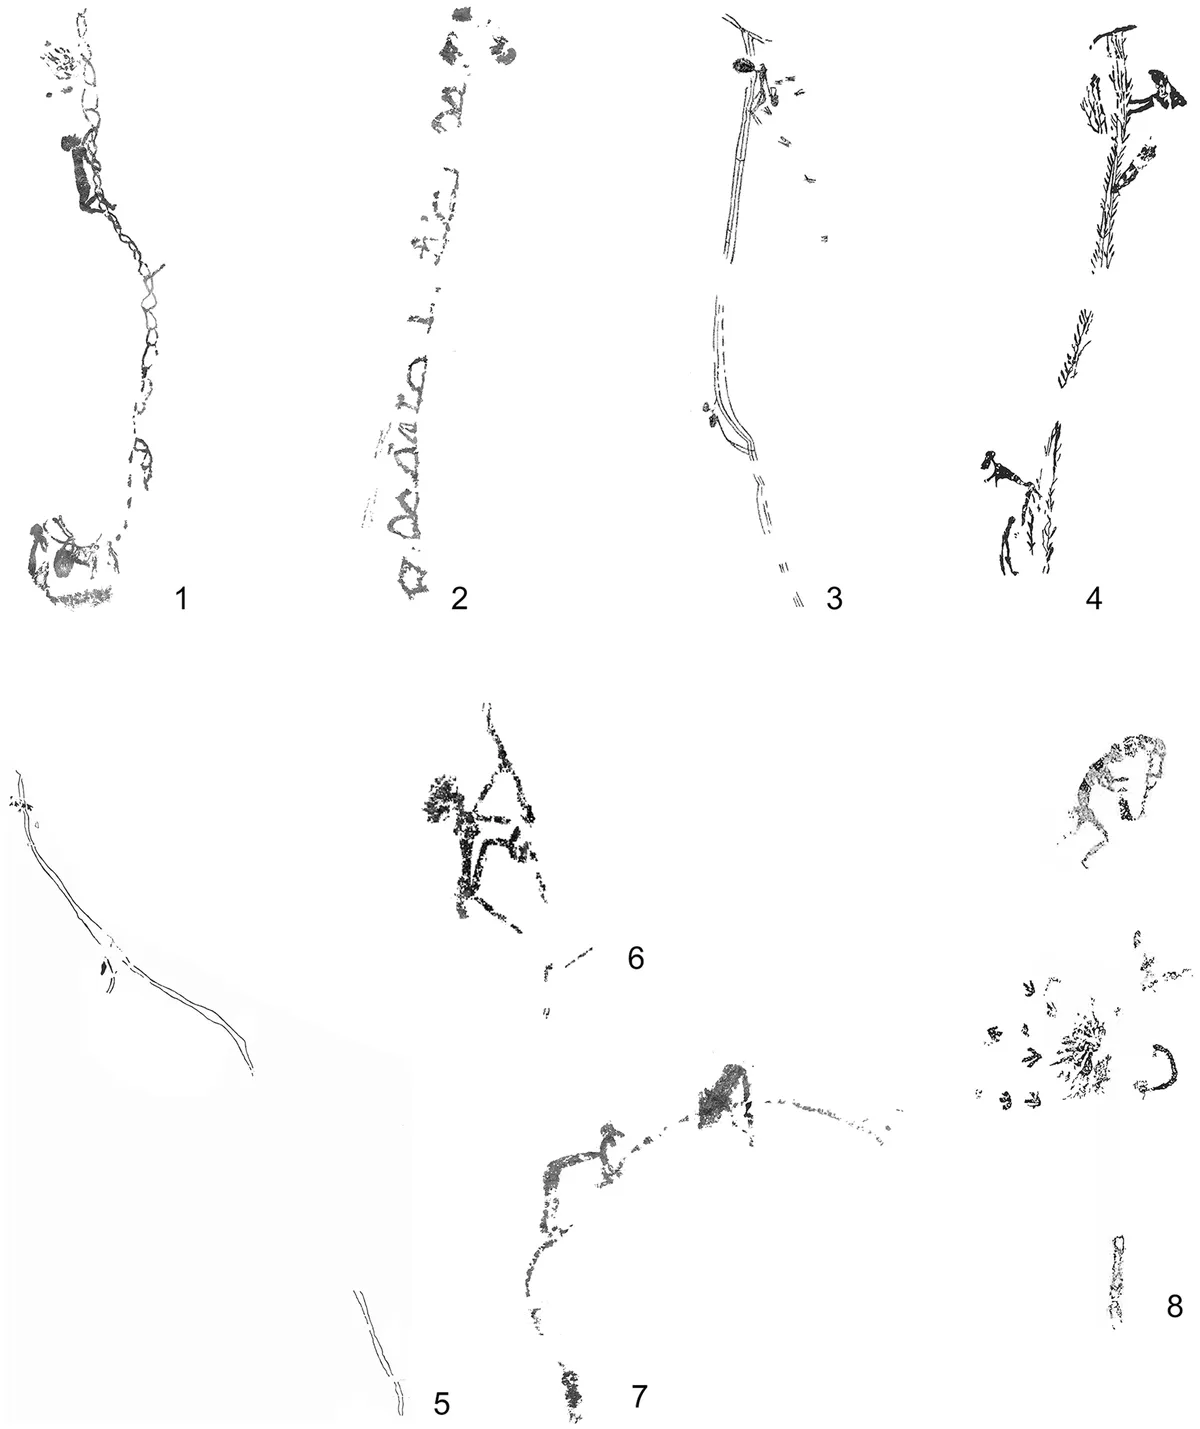 Разнообразие различных гибких систем для лазания, найденных в левантийских наскальных рисунках